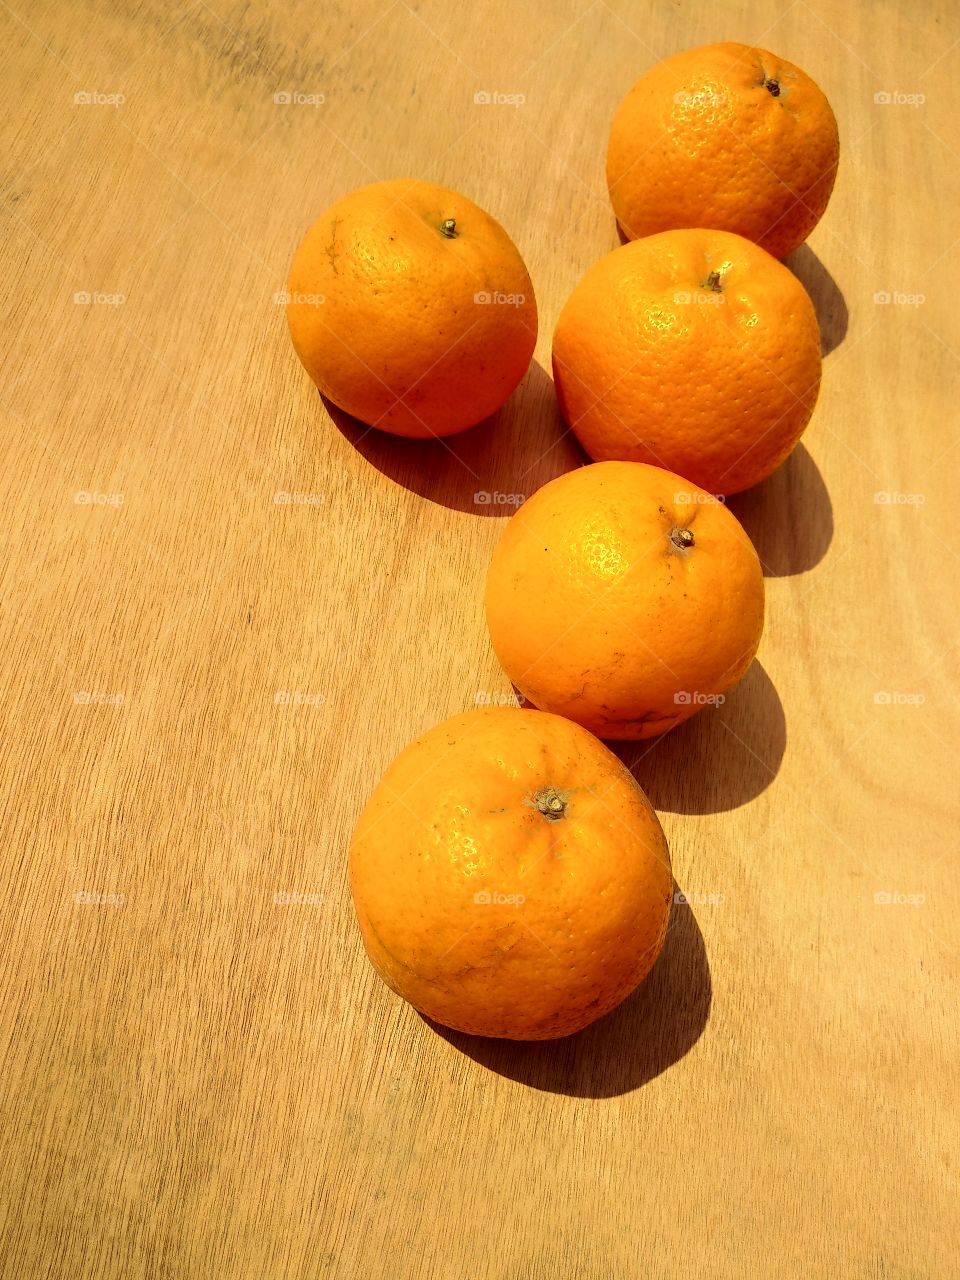 orange,fruit,food,health